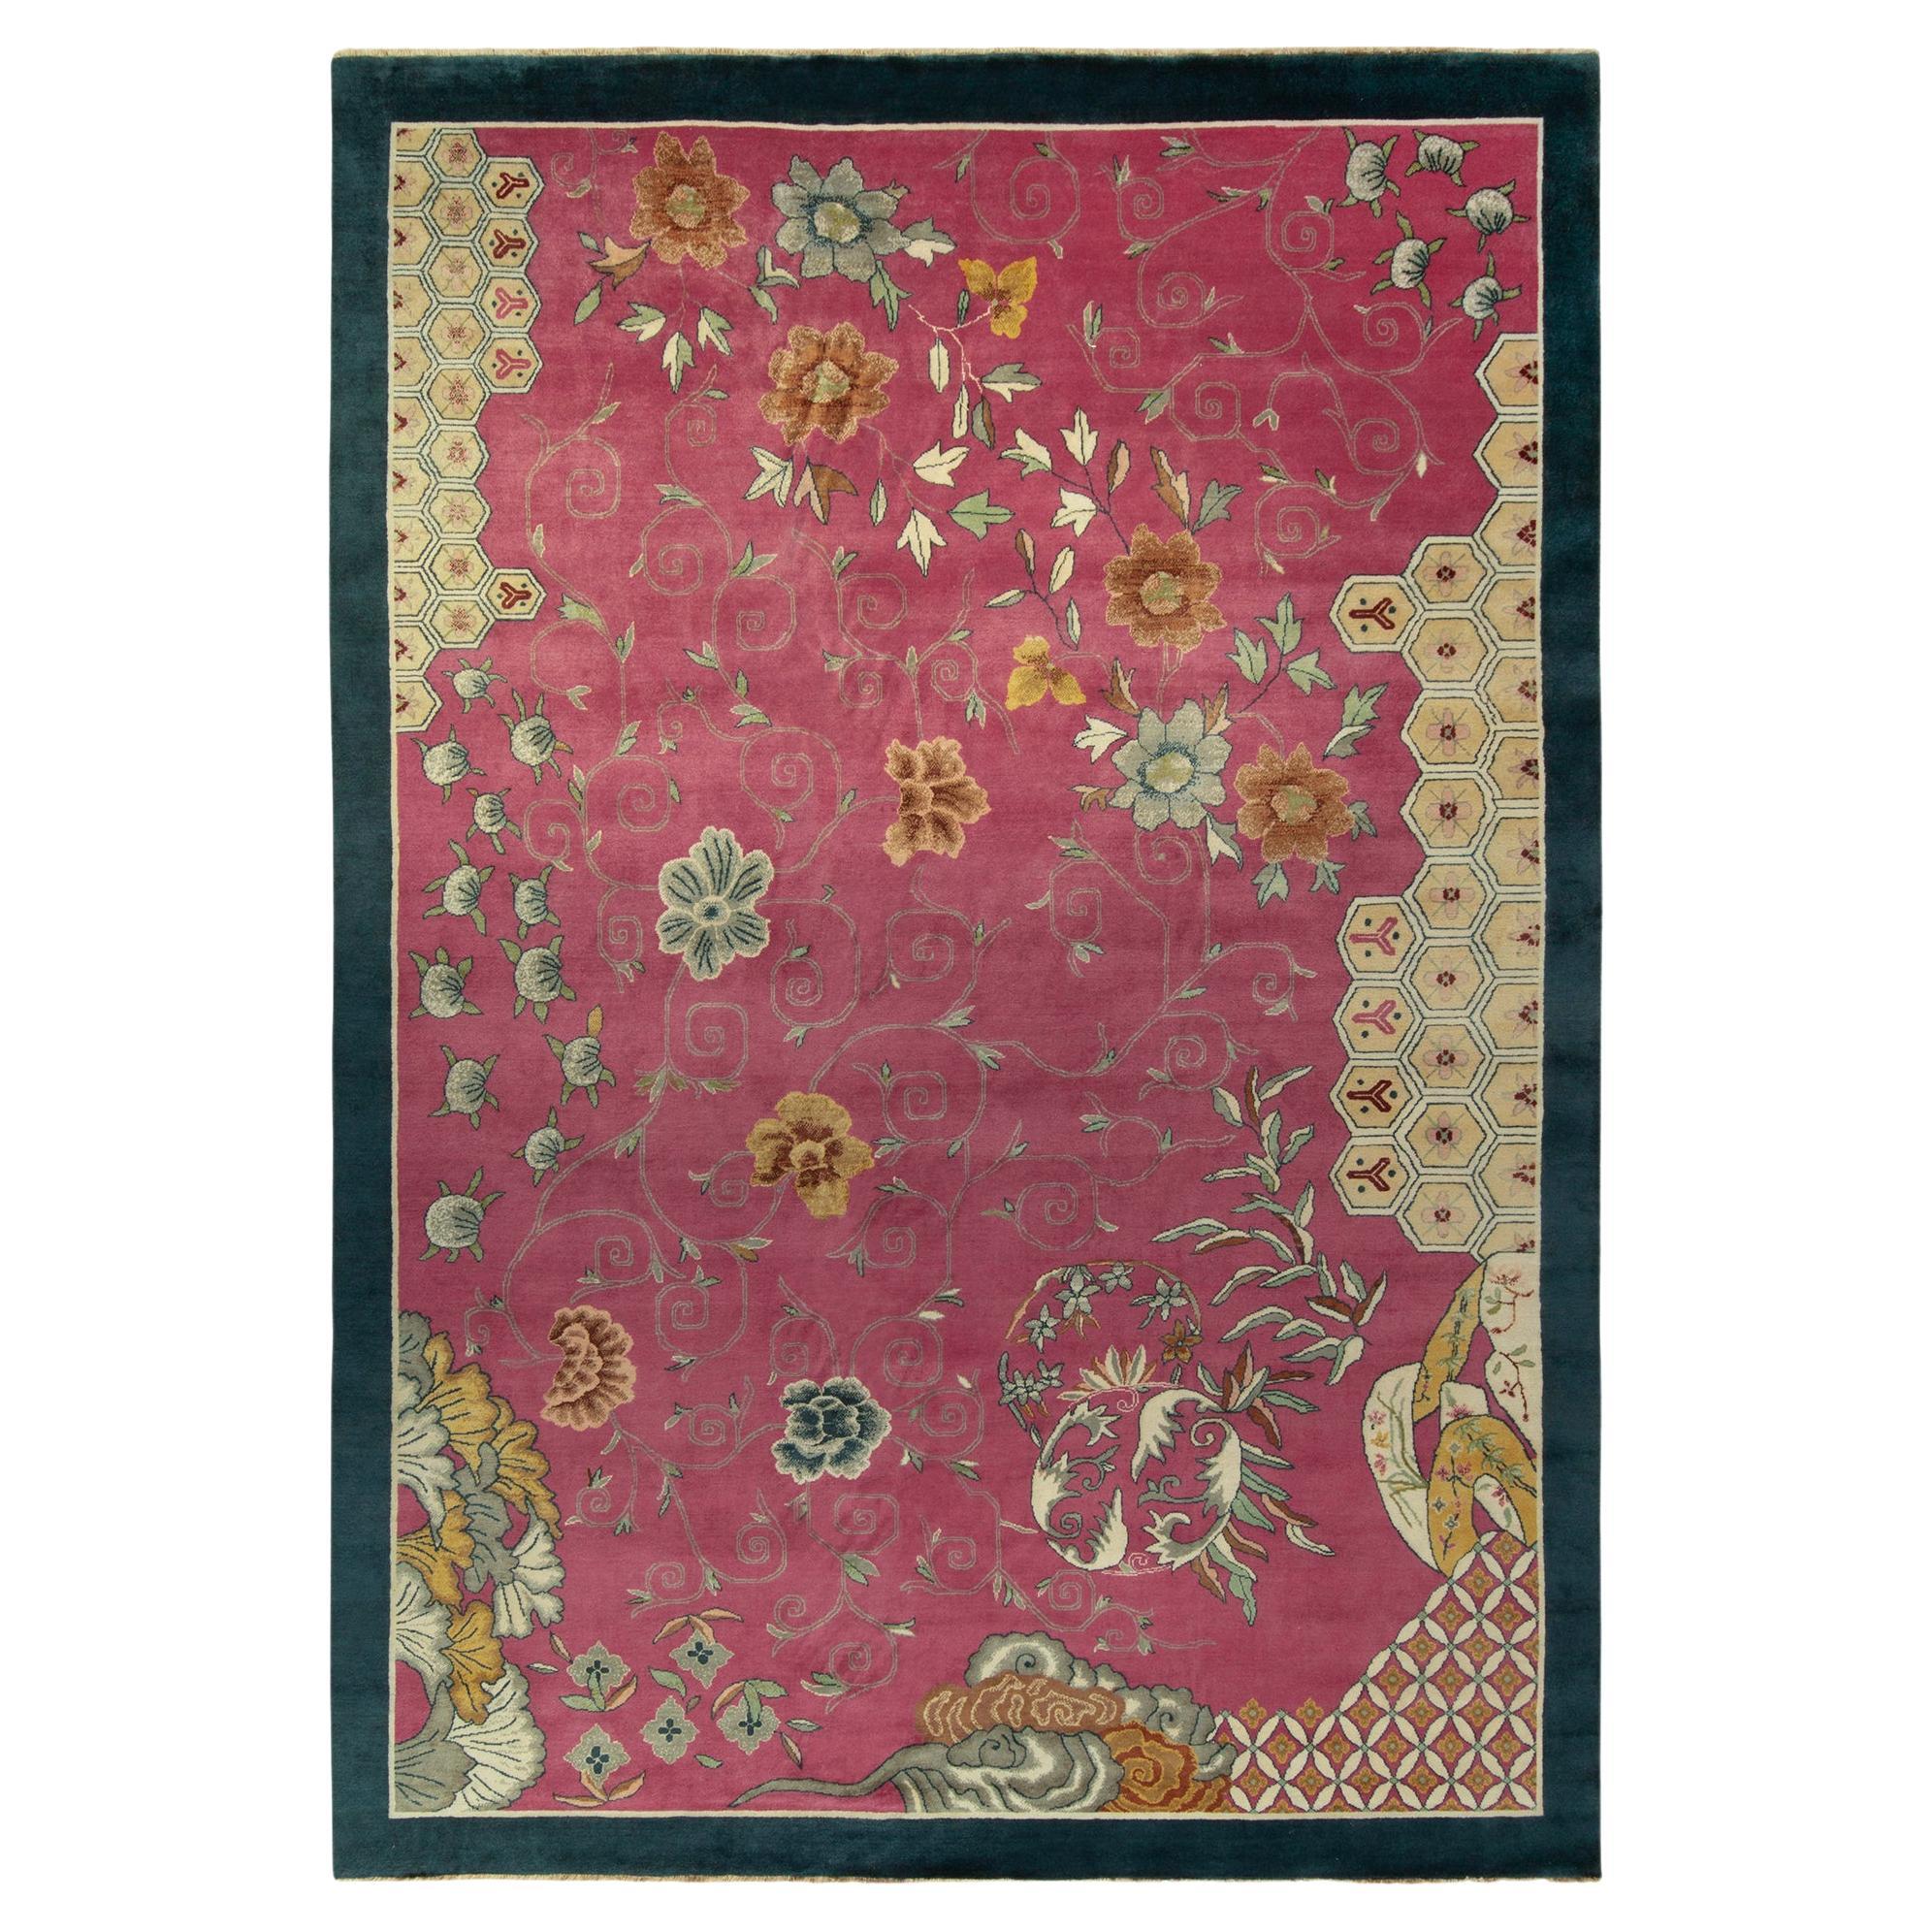 Rug & Kilim's Chinesischer Deko-Teppich in Rosa mit blauer Bordüre und goldenen Blumen